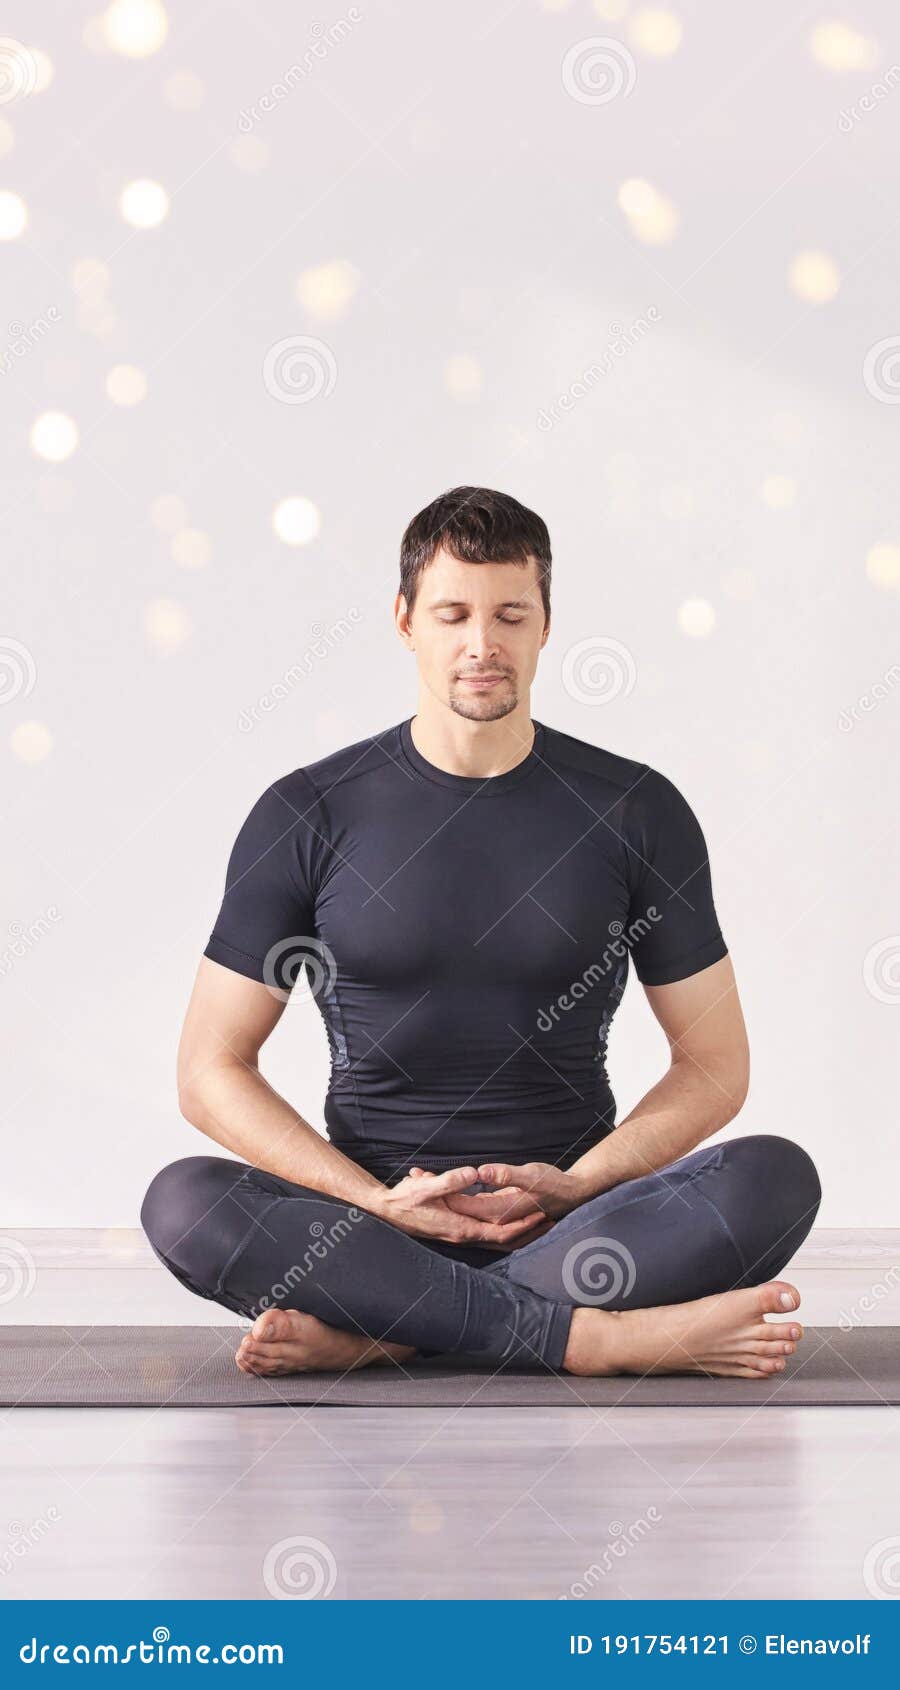 Man Sitting at Lotus Yoga Pose. Home Morning Routine Stock Image